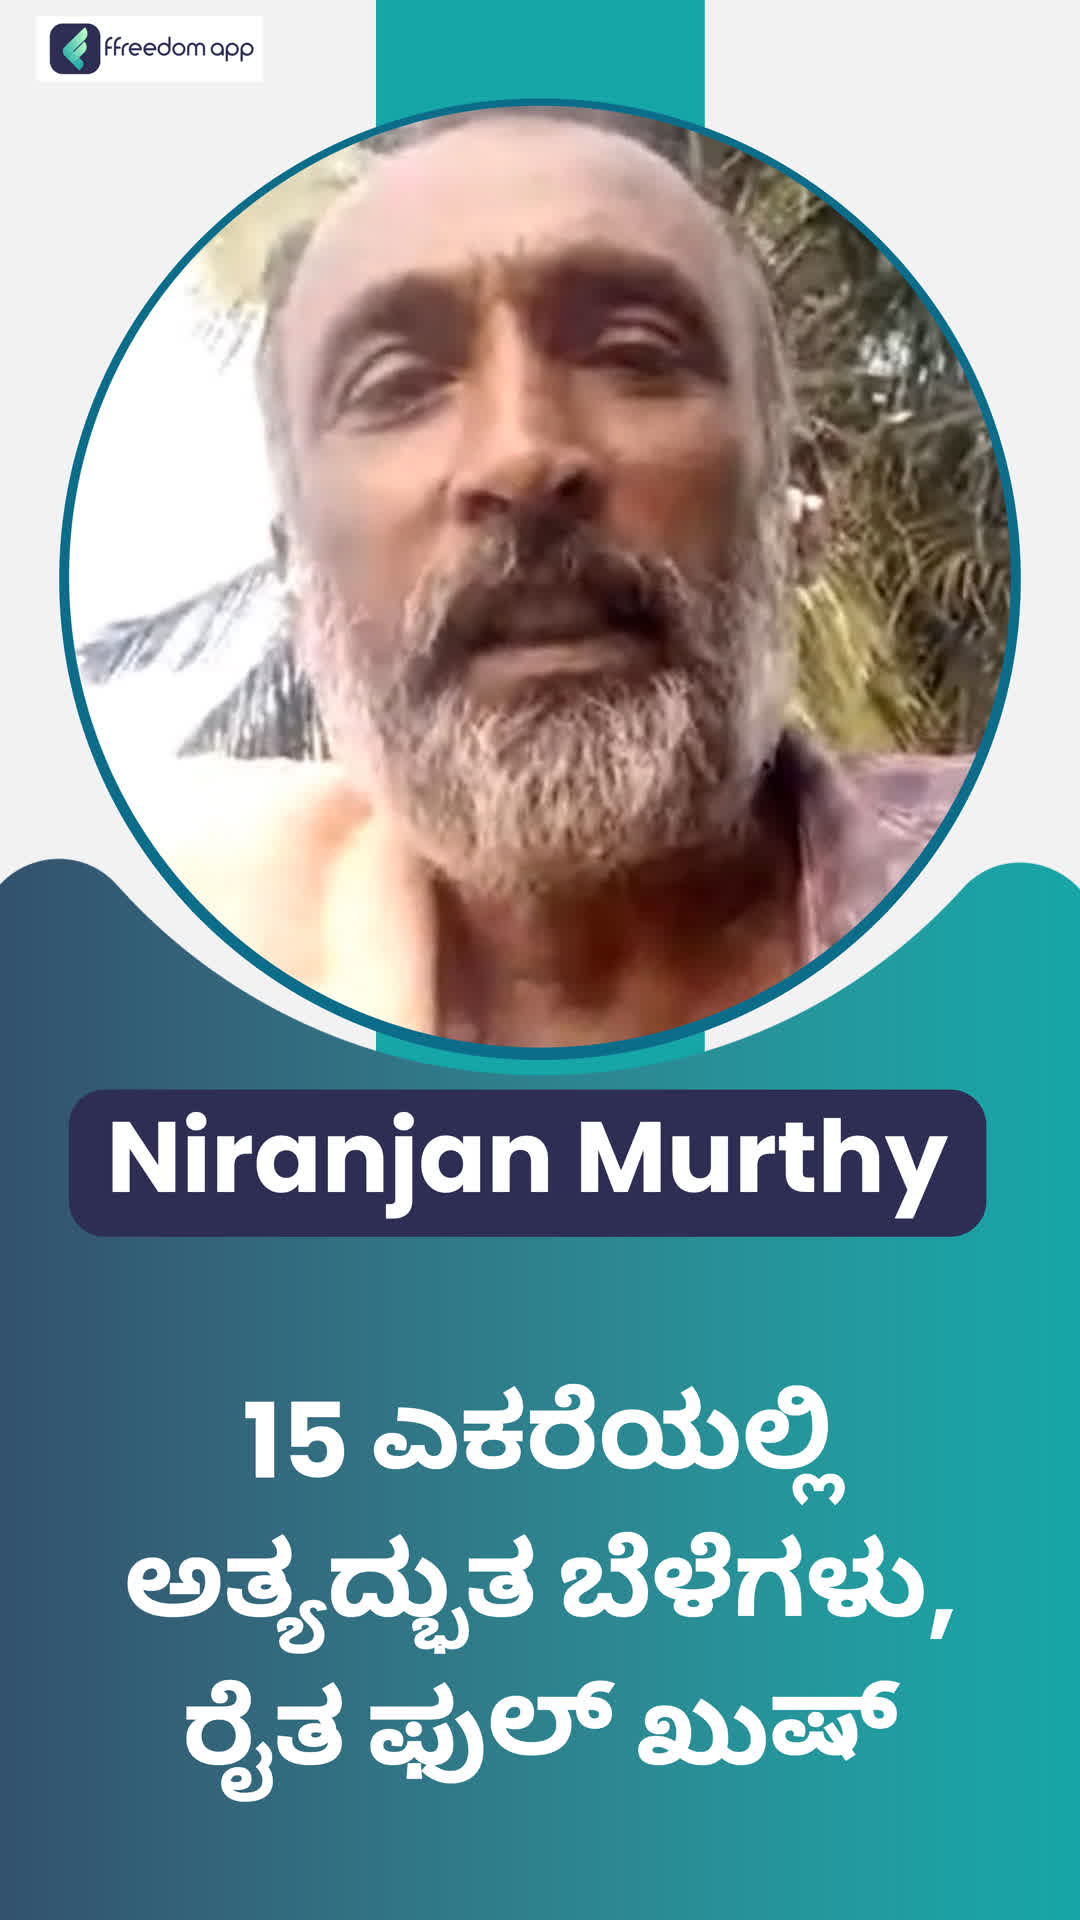 Niranjan Murthy's Honest Review of ffreedom app - Tumakuru ,Karnataka